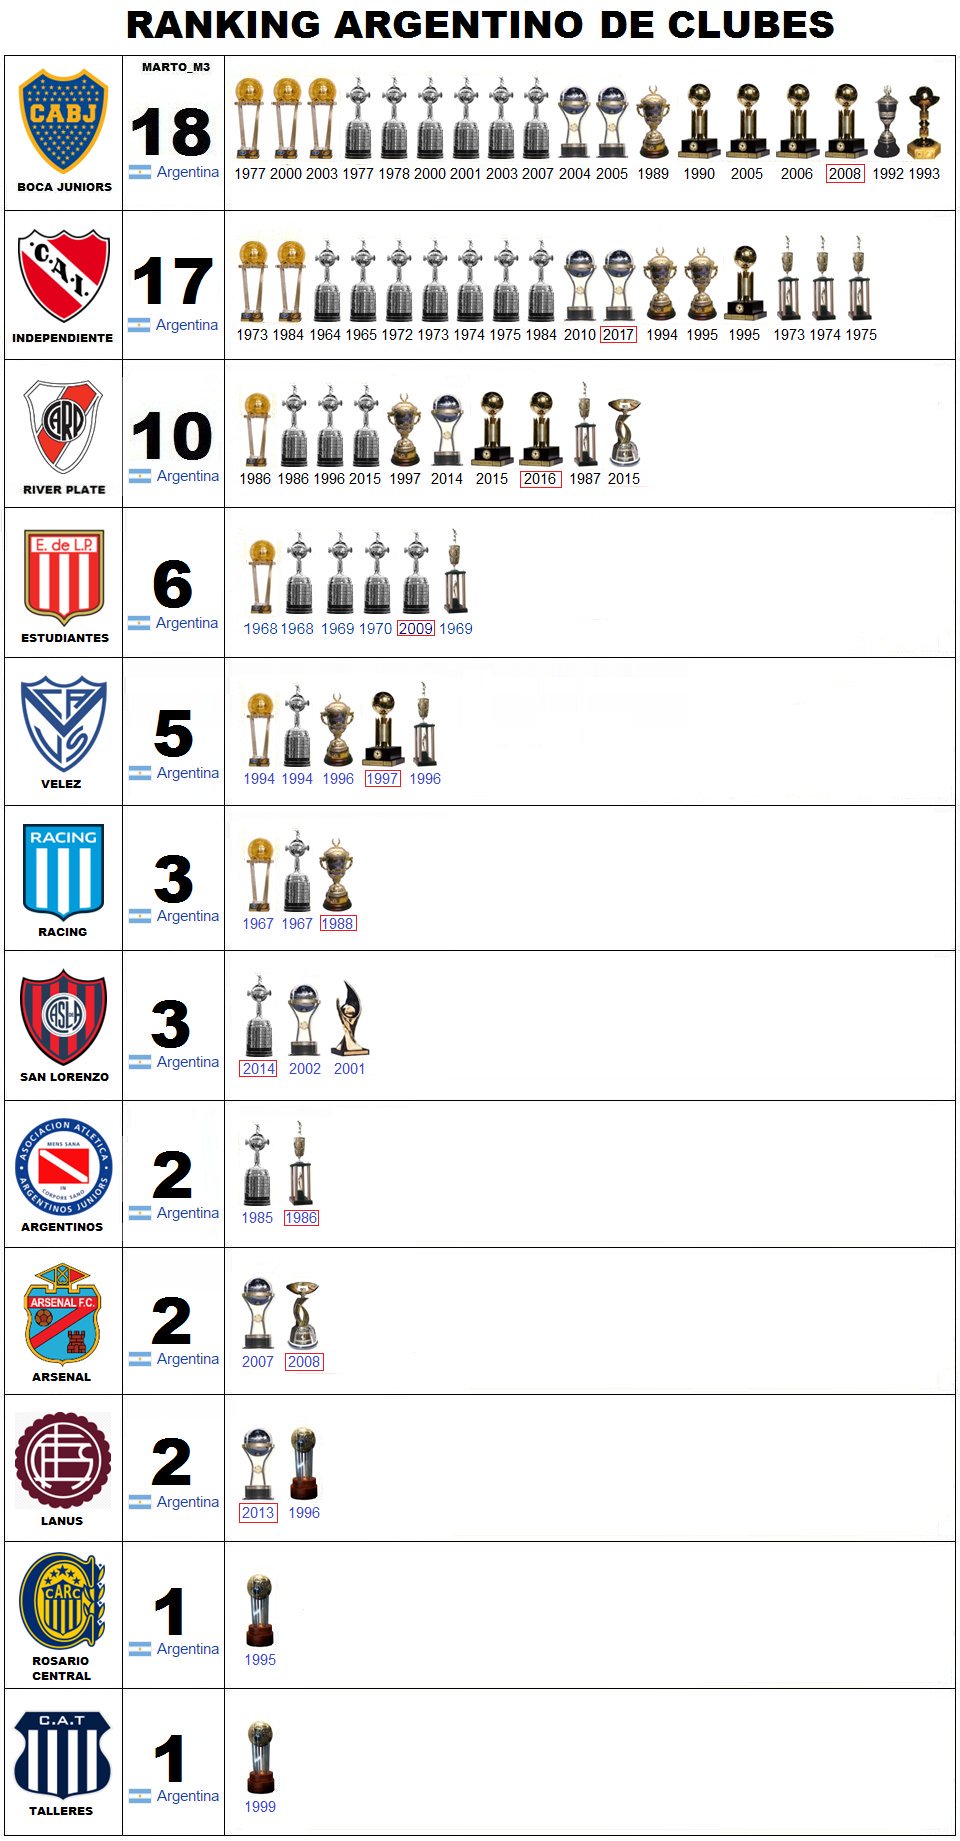 Cuántas intercontinentales tiene Independiente?